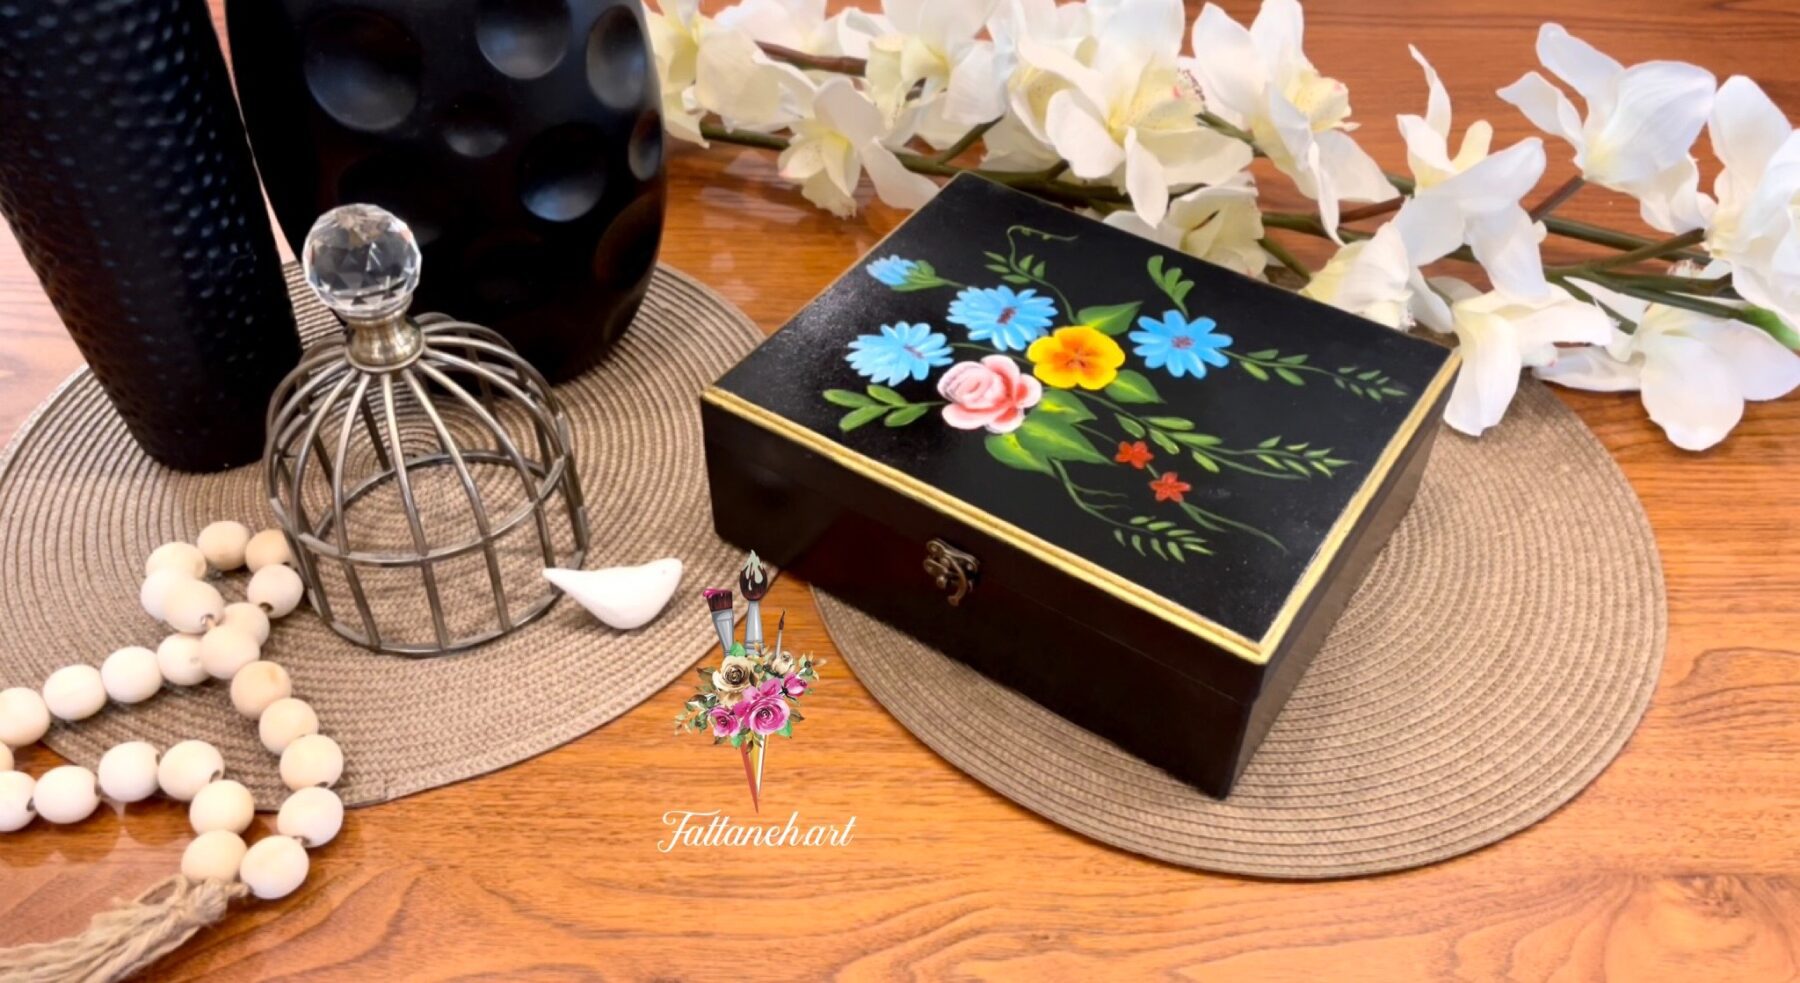 جعبه چوبی دمنوش زیبا با زمینه مشکی و گلهای رنگی